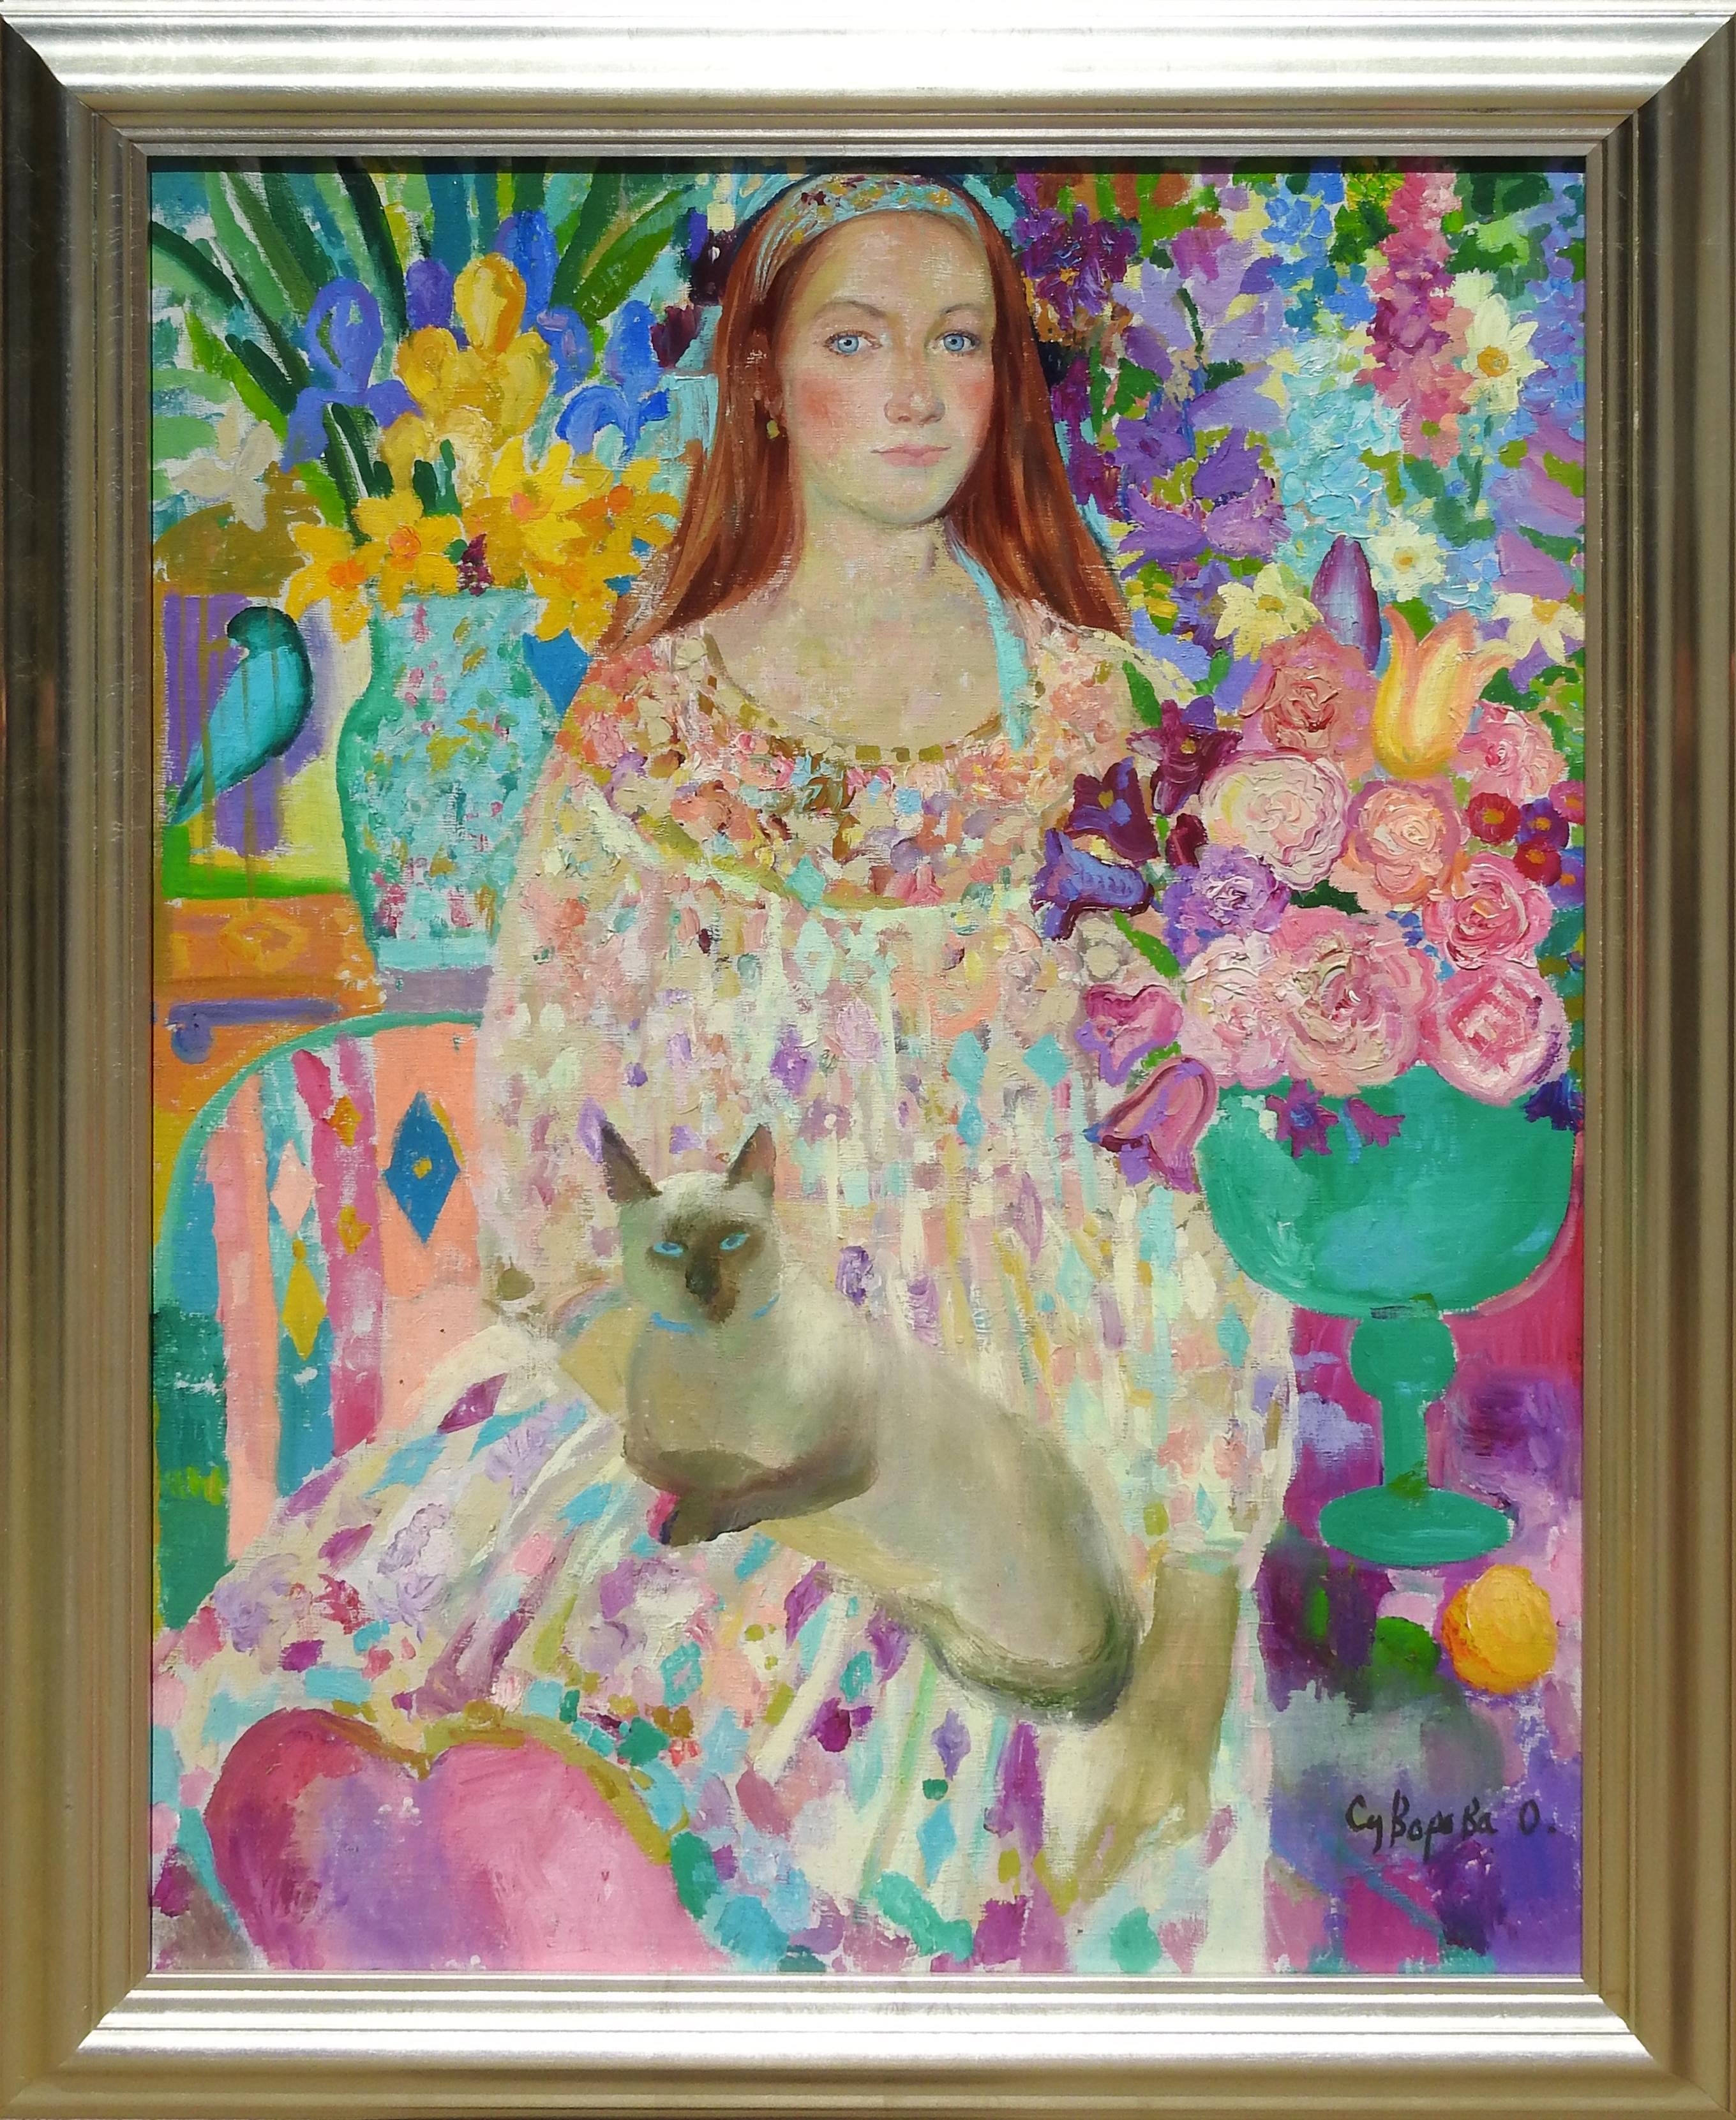 Olga Suvorava Figurative Painting - "Tania", Olga Suvorova, Oil on Canvas, Figurative Realism, Cat, Floral, 42x31 